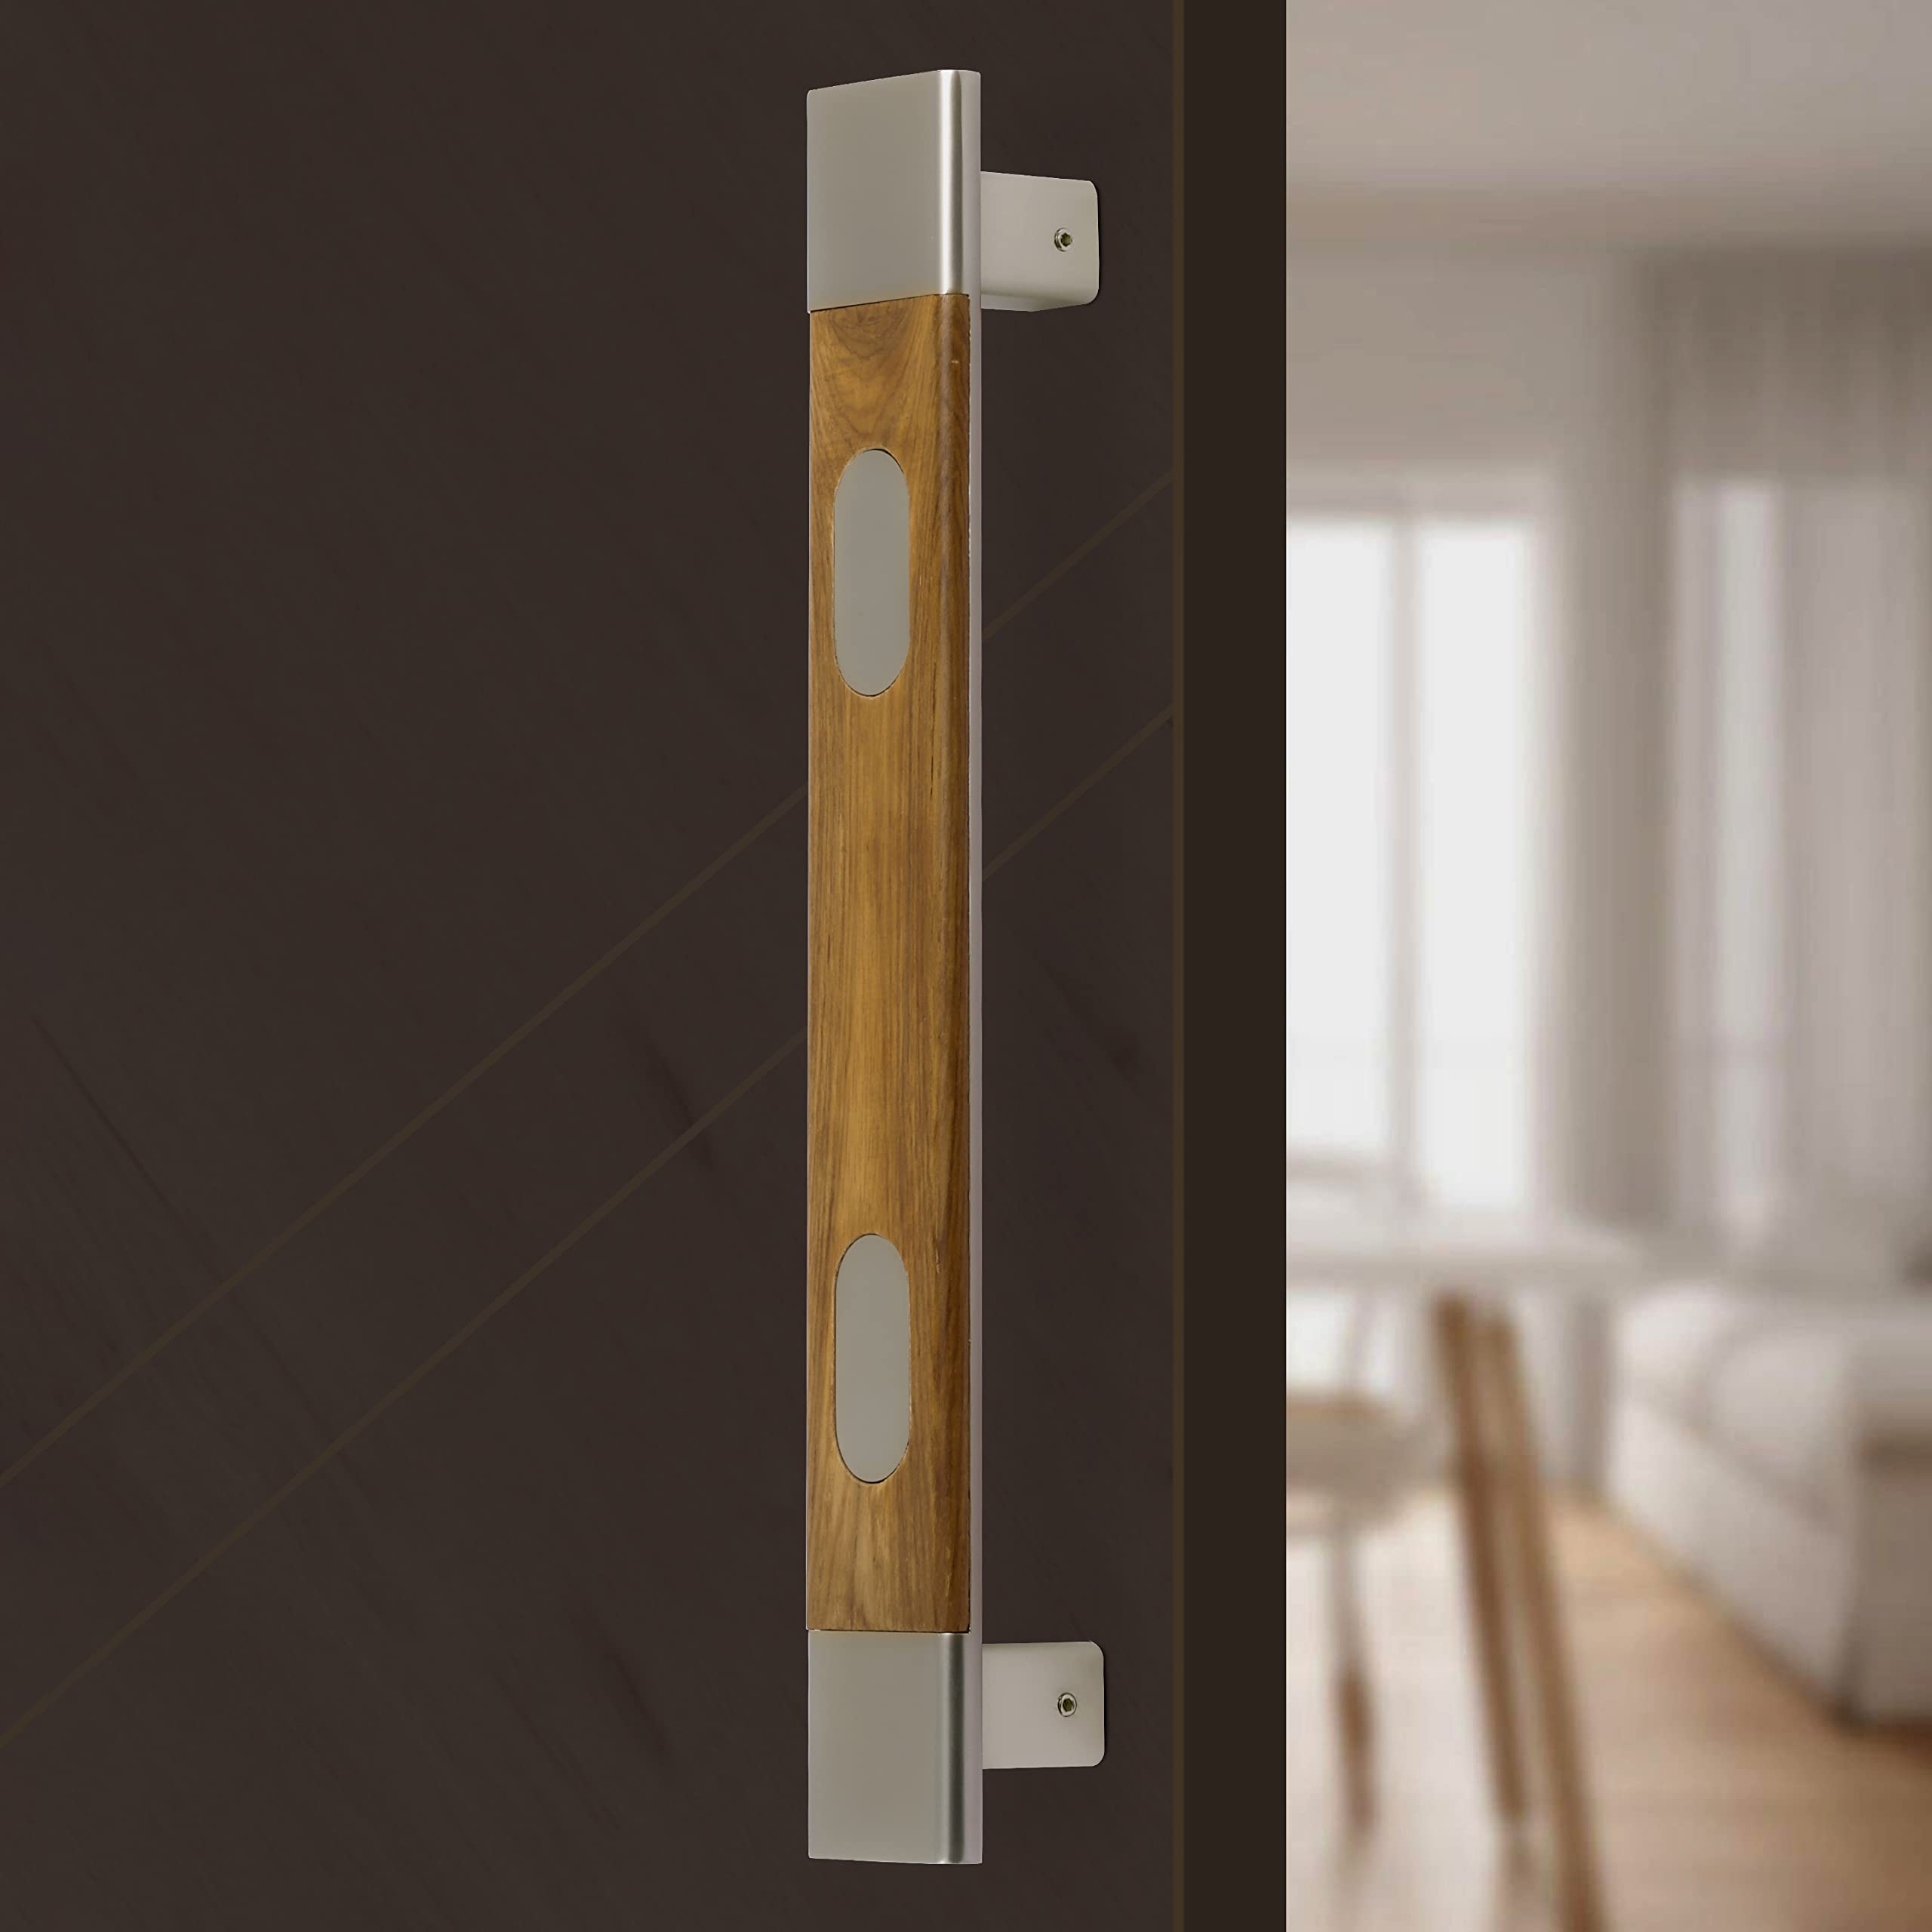 Plantex Door Handle/Door & Home Decor/14 Inch Main Door Handle/Door Pull Push Handle – Pack of 1 (300, Satin and Wood Finish)